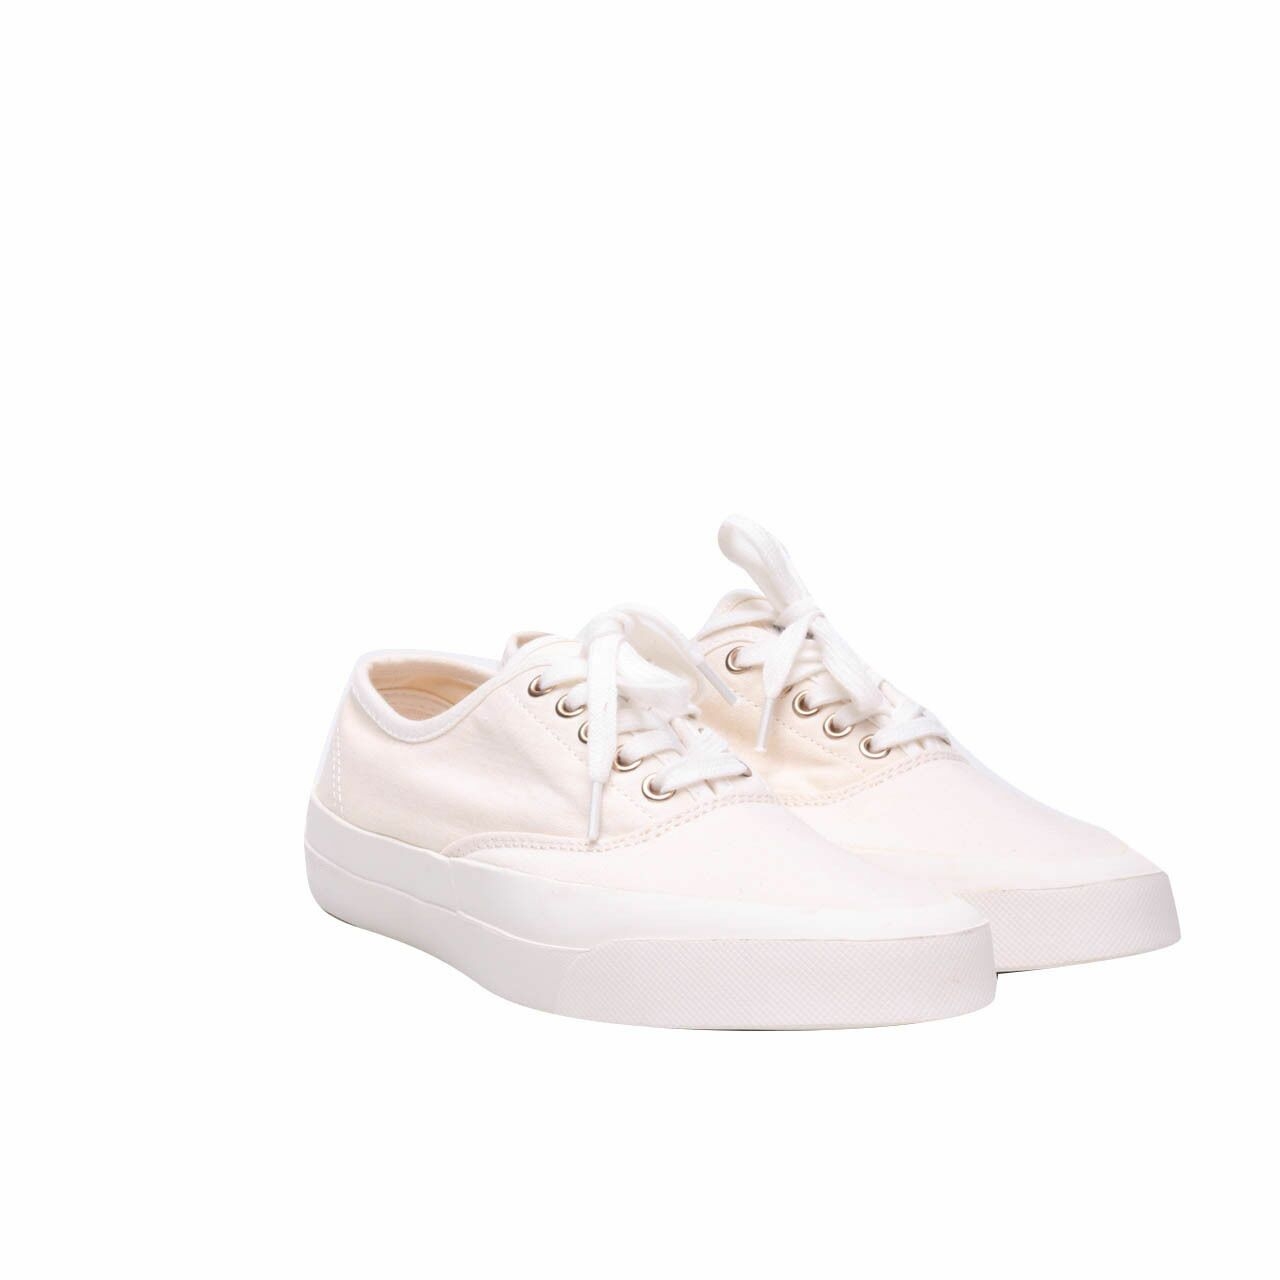 Maison Kitsune White Sneakers